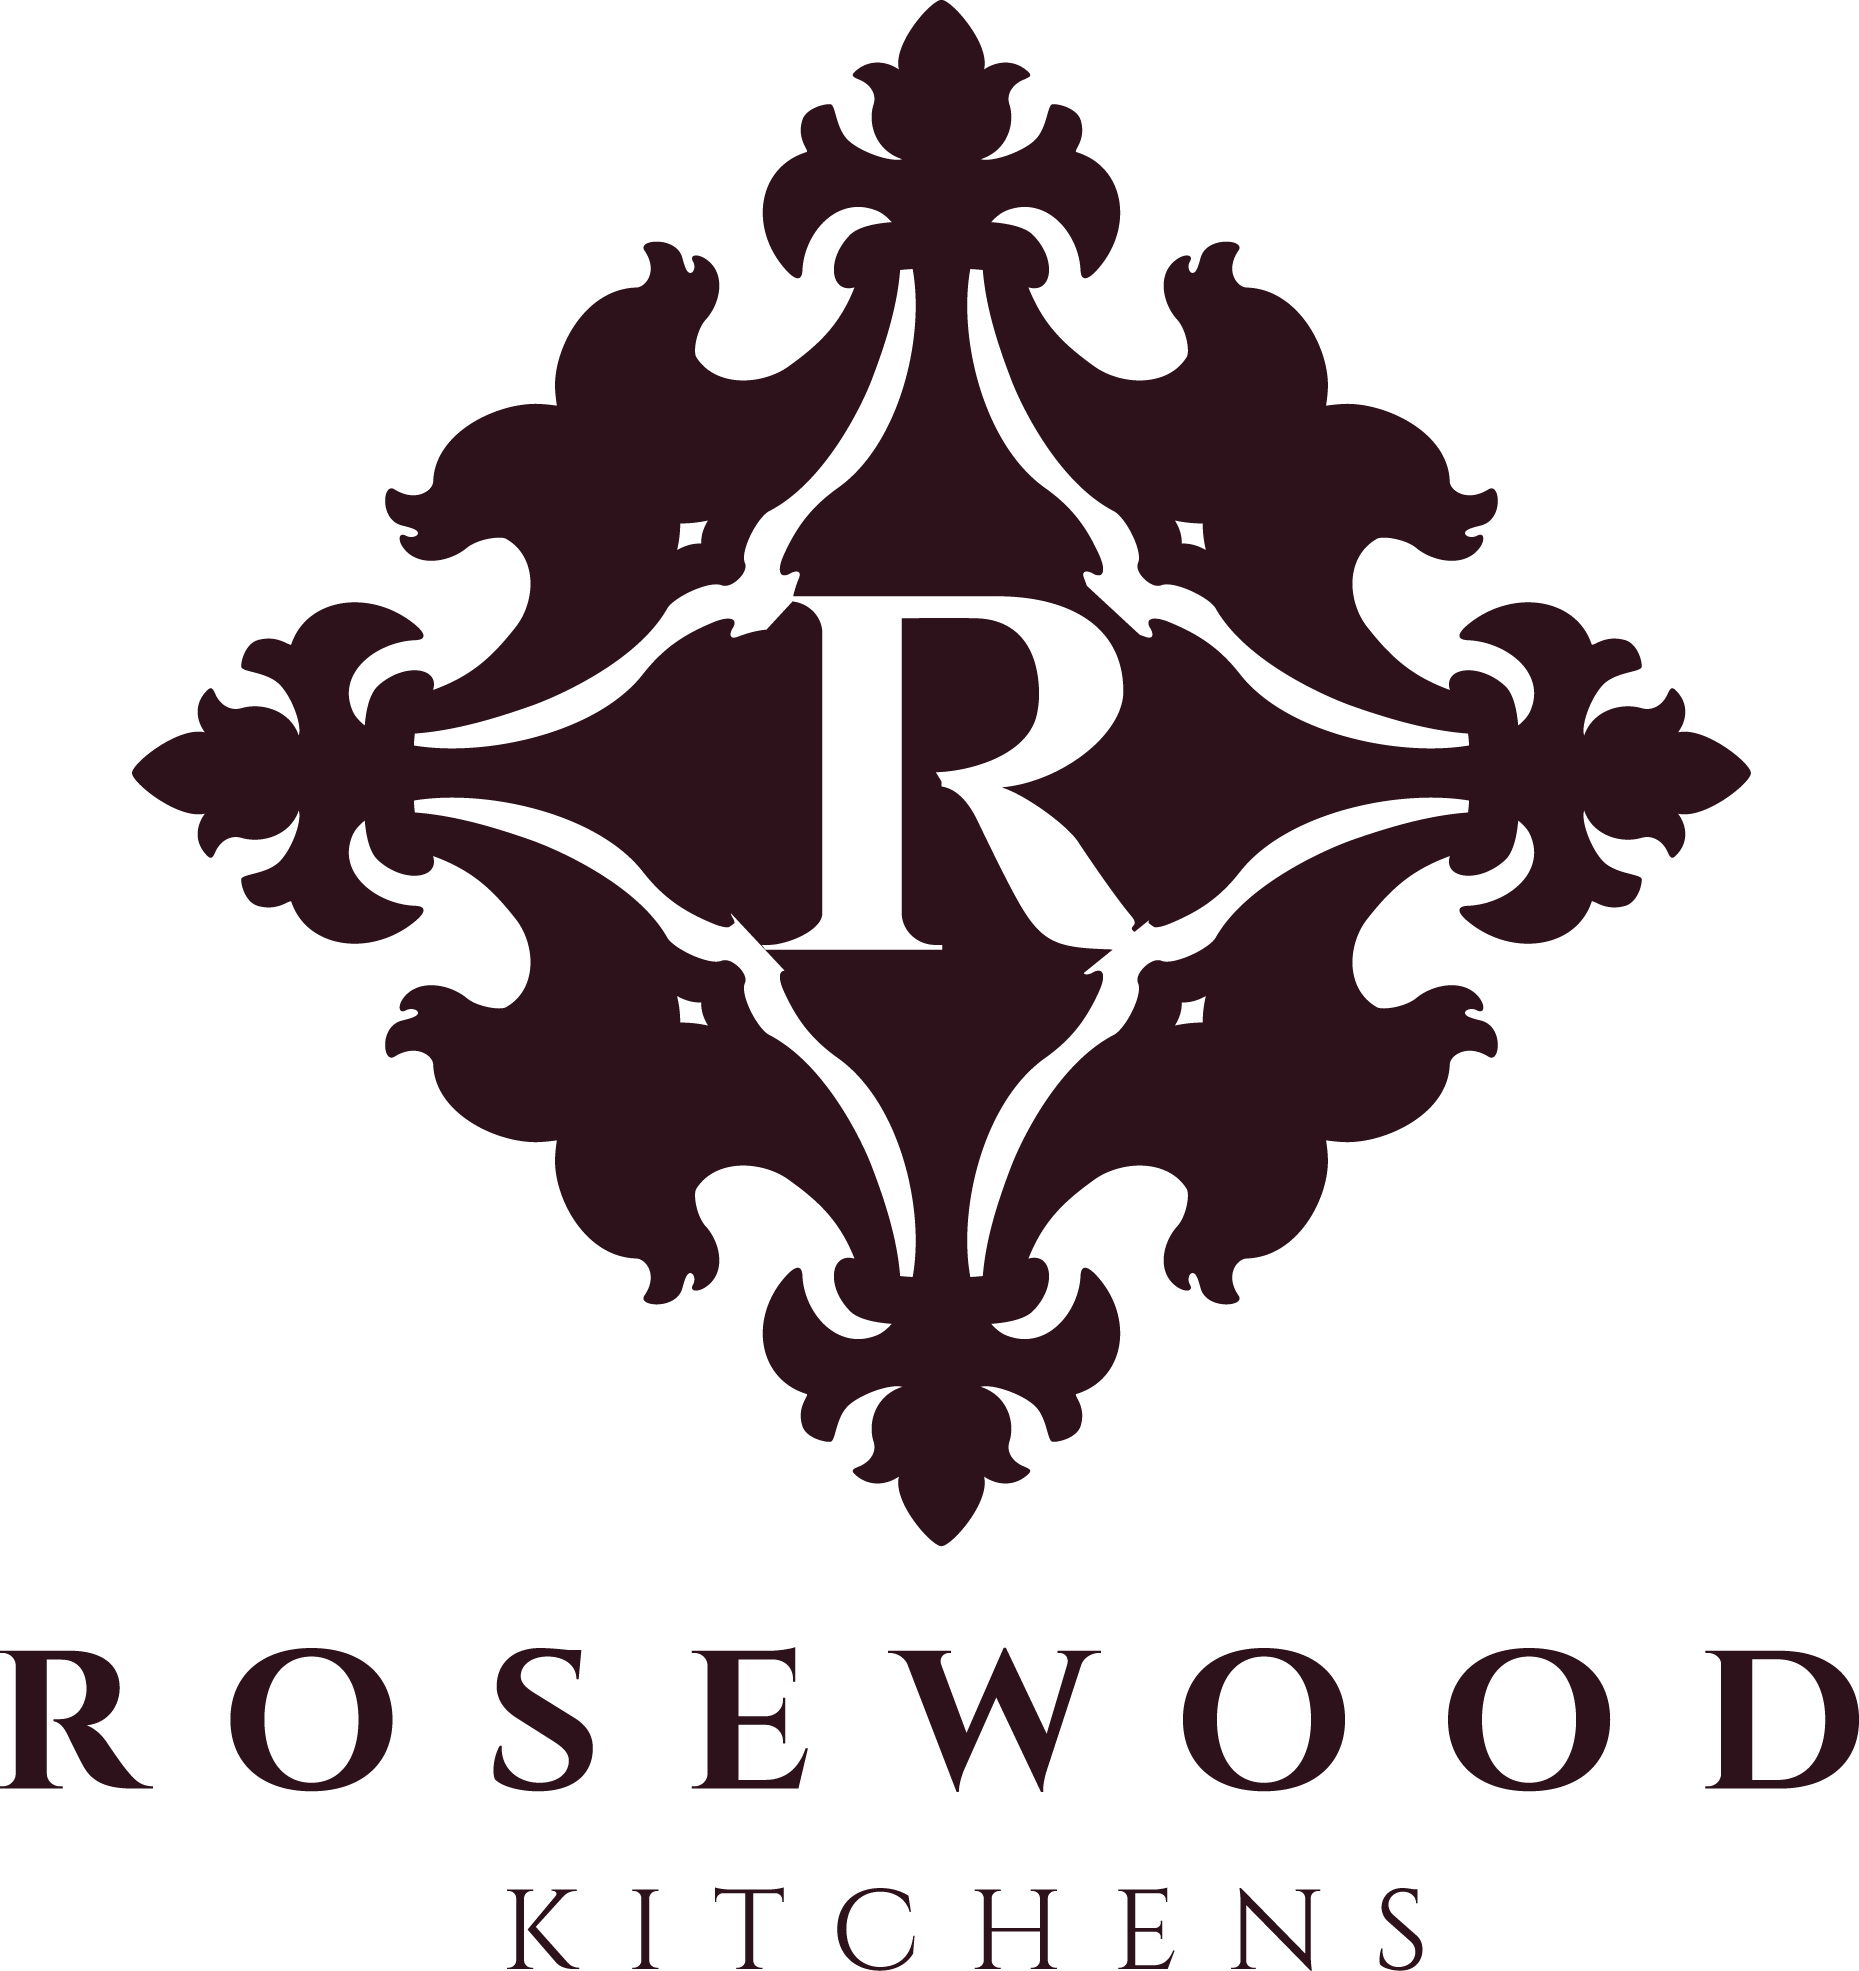 Rosewood Kitchens's logo